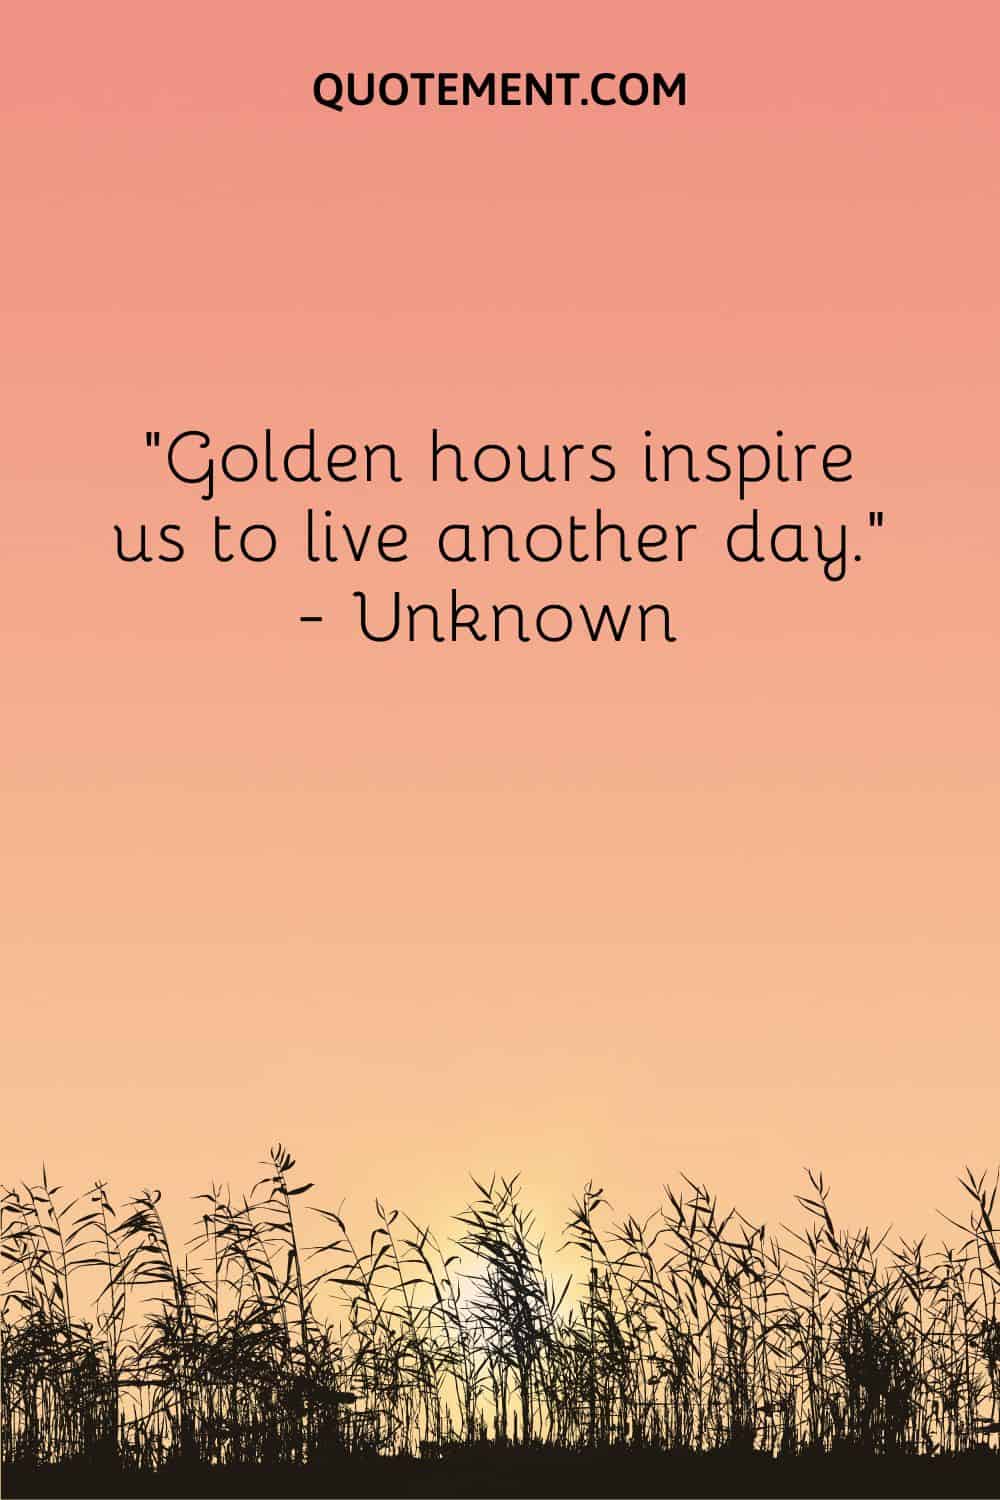 Las horas doradas nos inspiran para vivir un día más